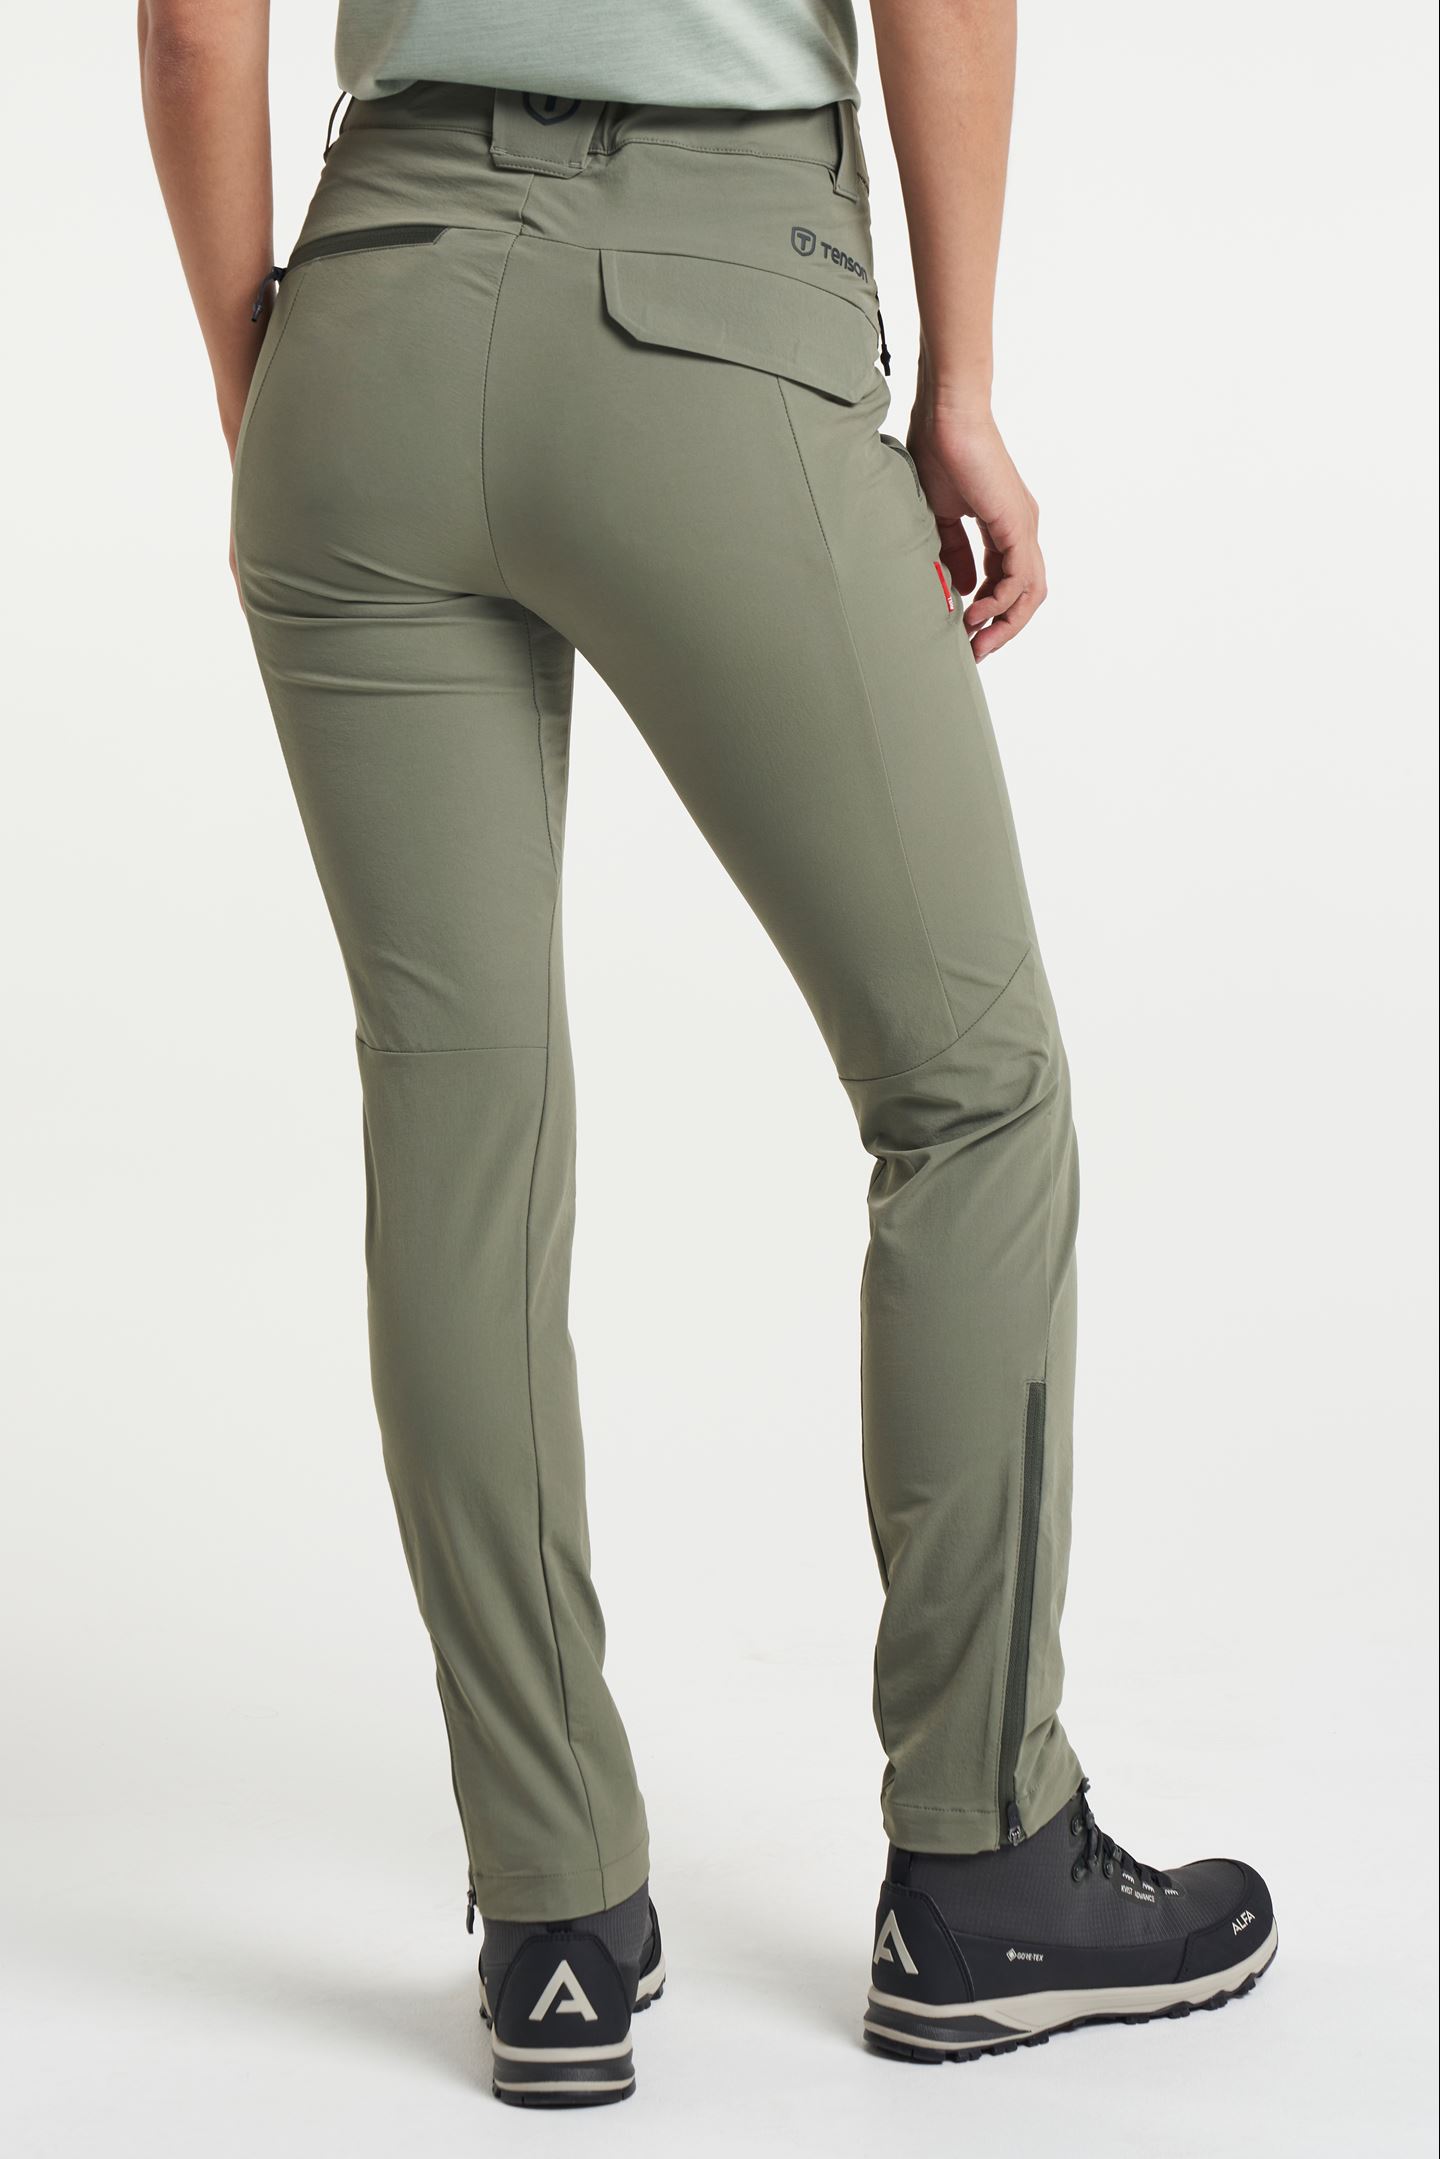 TXlite Adventure Pants - Elastische broek voor dames - Dark Green